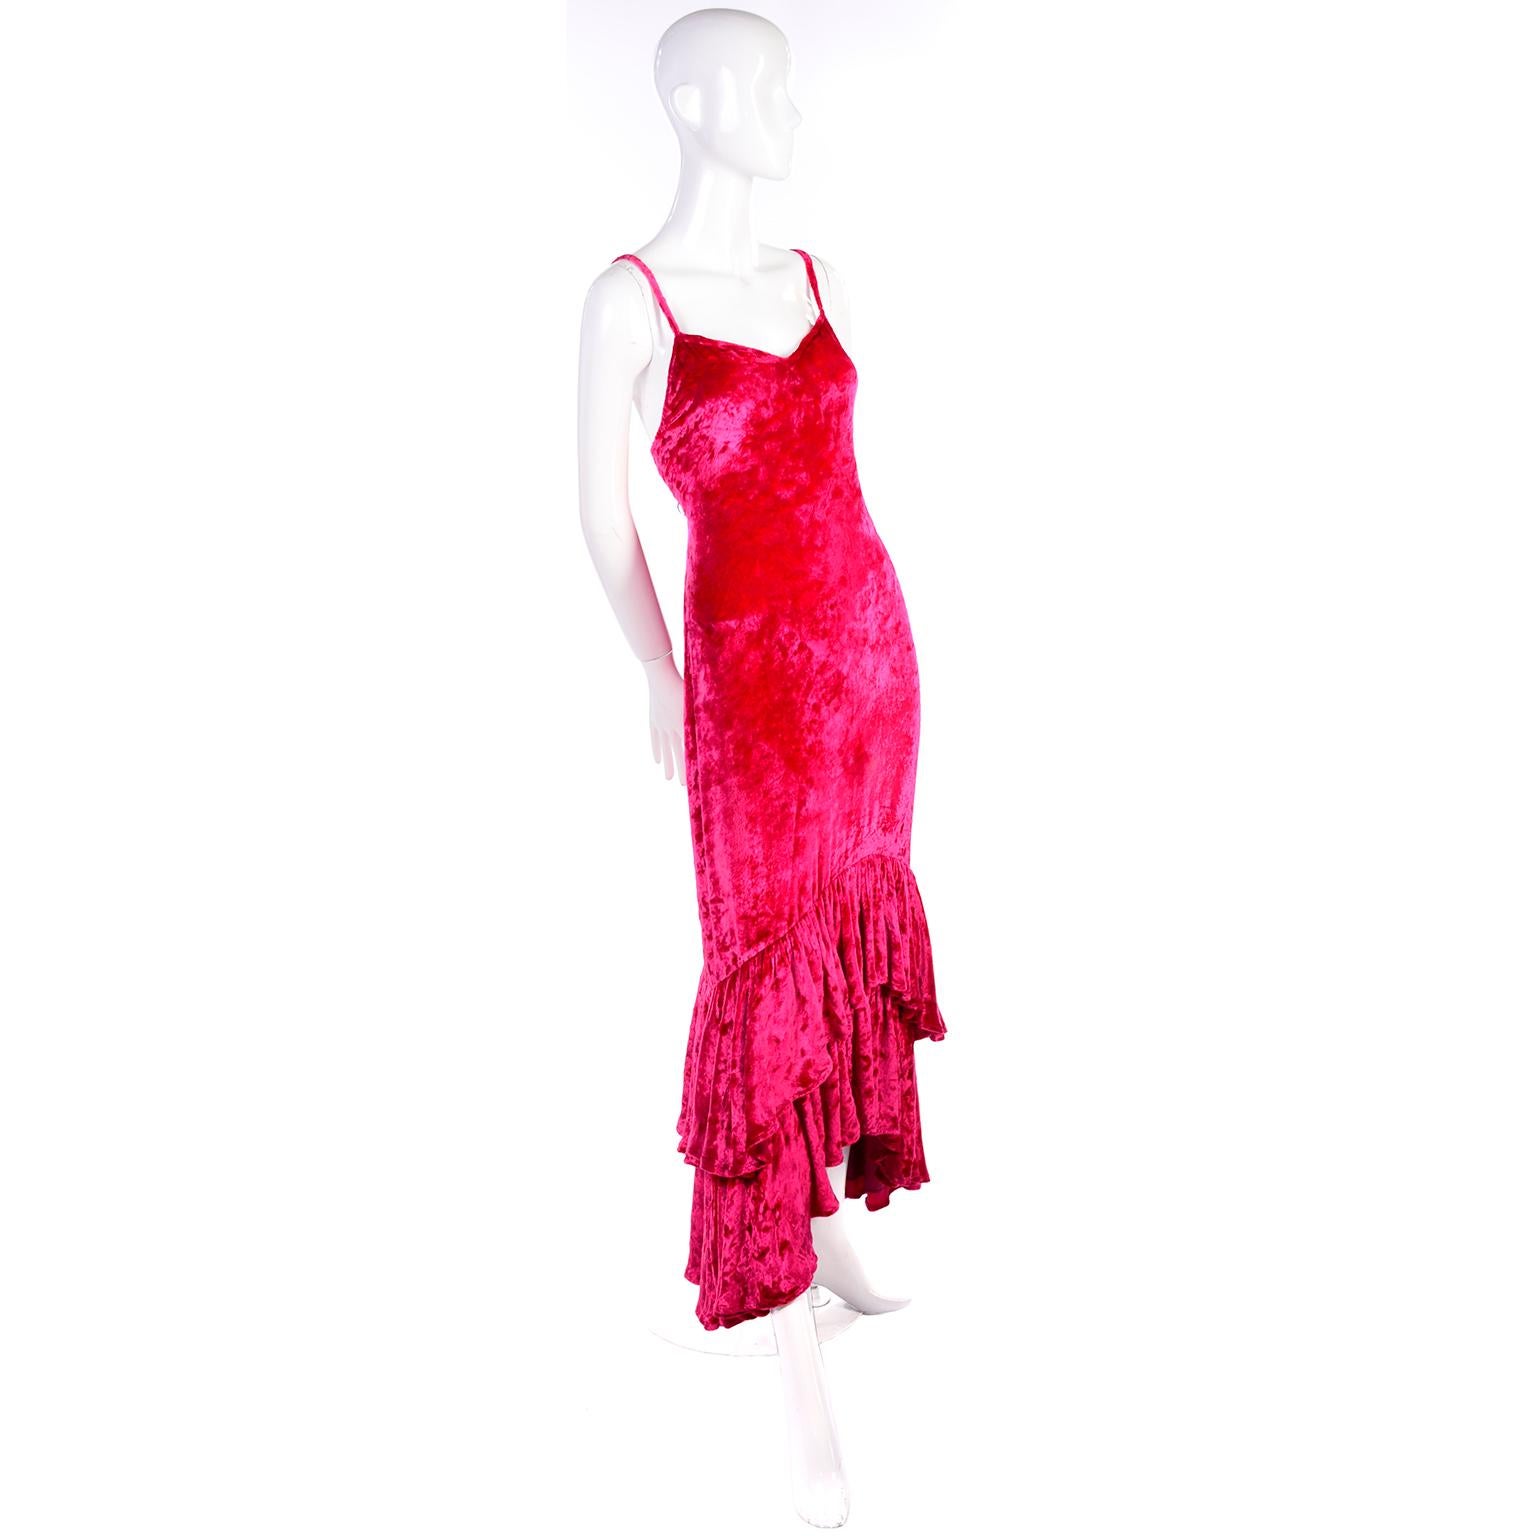 Cette magnifique robe vintage Sonia Rykiel en velours écrasé rose framboise présente un ourlet unique à double rangée de volants de haut en bas. Elle est dotée de bretelles spaghetti et se boutonne dans le dos à l'aide de boutons recouverts de